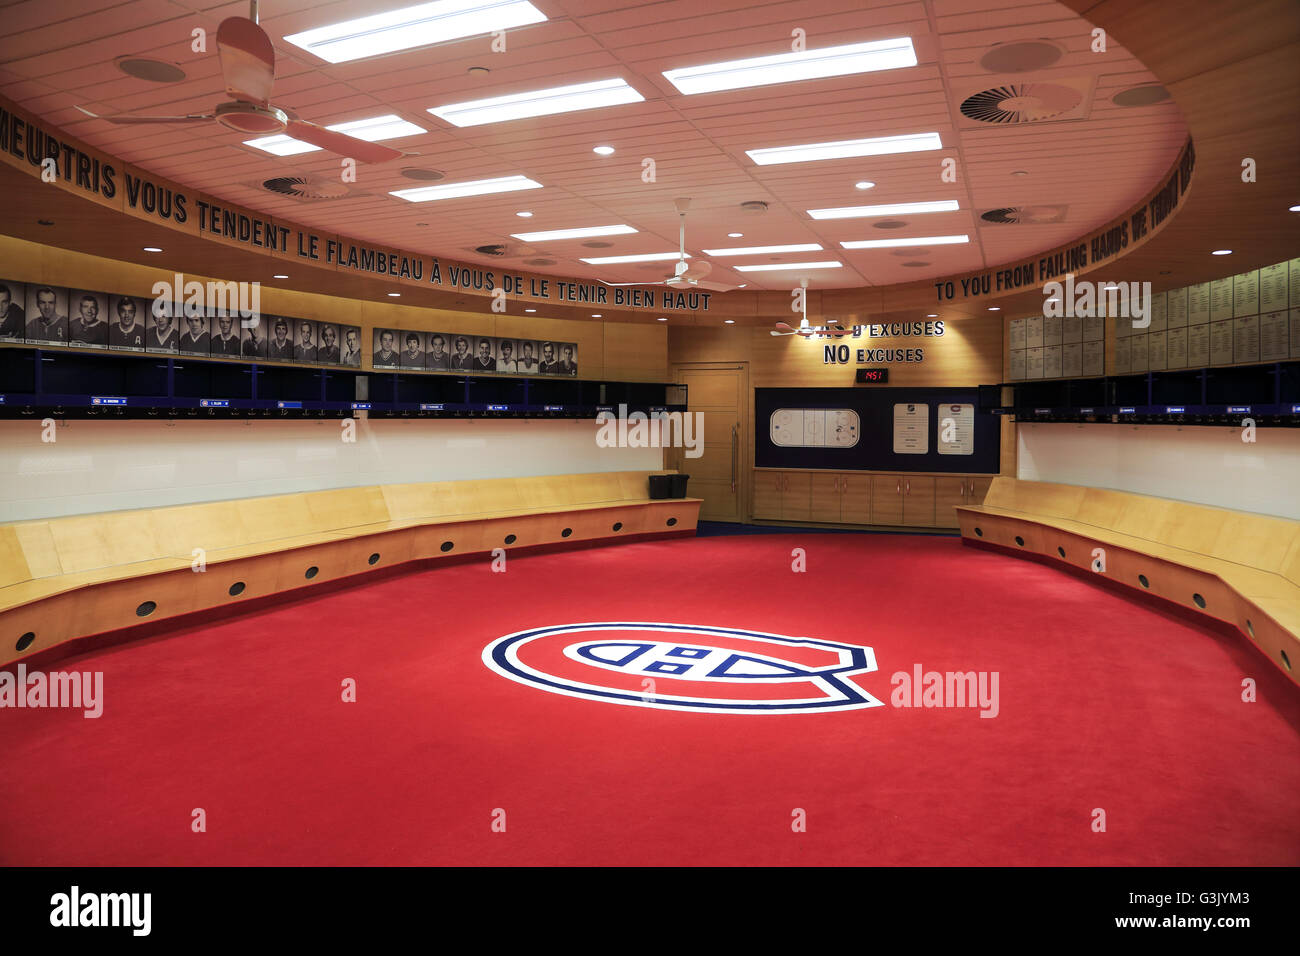 Vue de l'intérieur du vestiaire des Canadiens de Montréal dans la ligue de hockey de l'équipe au Centre Bell, Montréal Québec Canada Banque D'Images